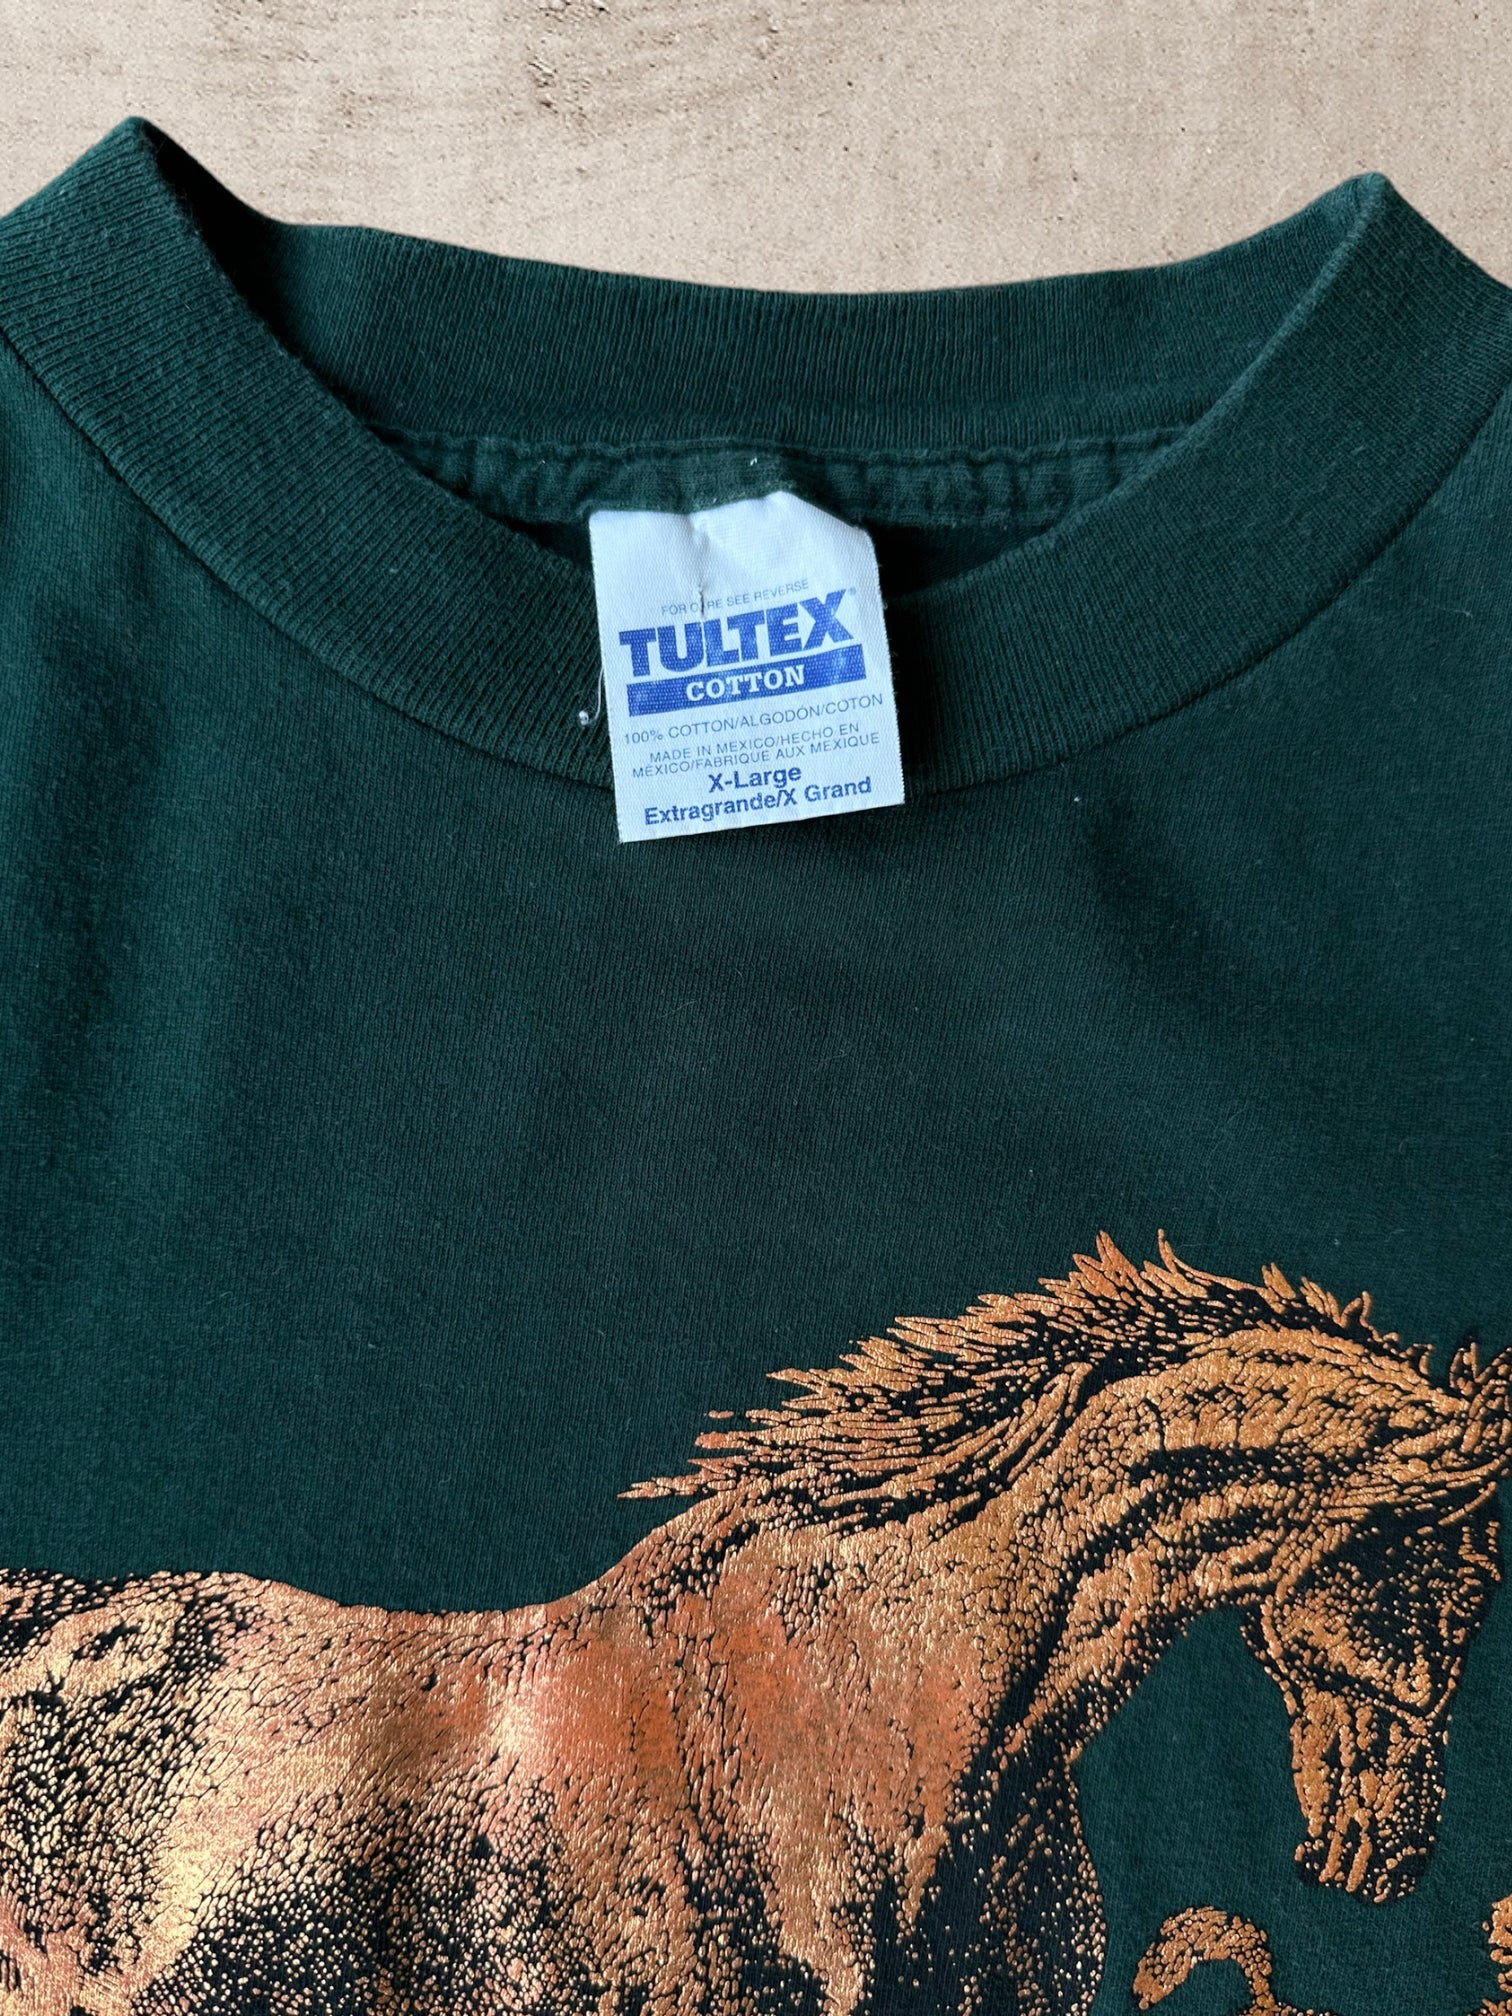 90s Nature Horses T-Shirt - XL